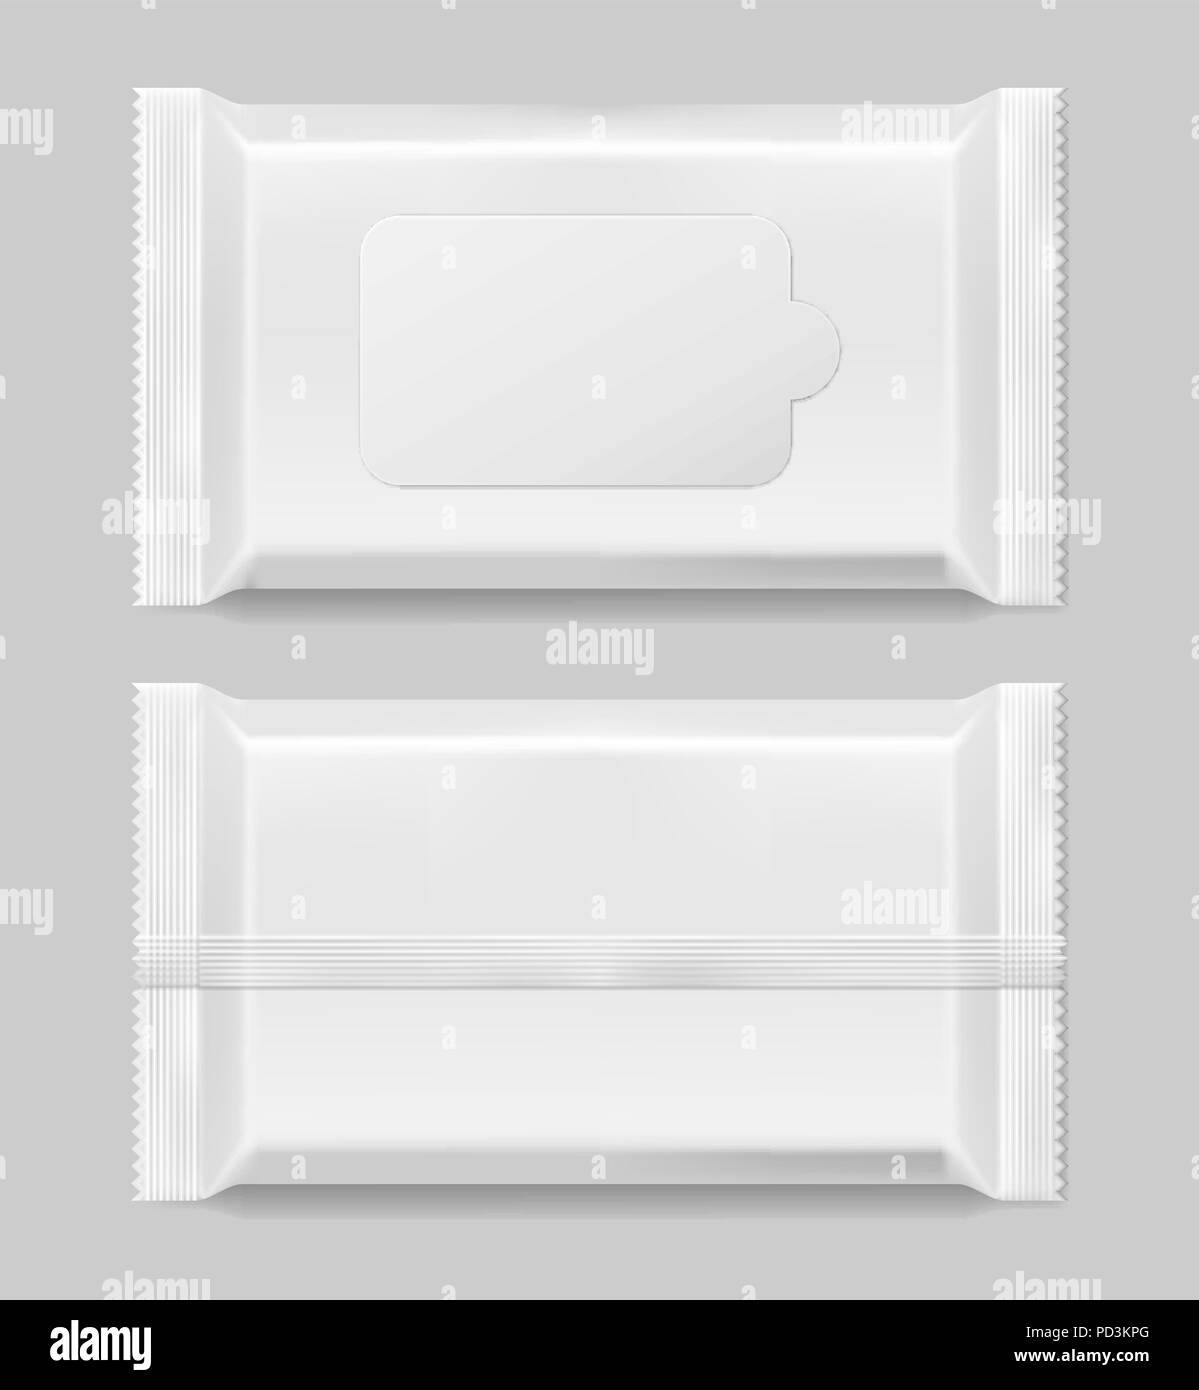 Feuchttücher Servietten Vorlage vorne und vack Ansicht isoliert. Weiß Feuchttücher leeres Paket. Vector Illustration Stock Vektor